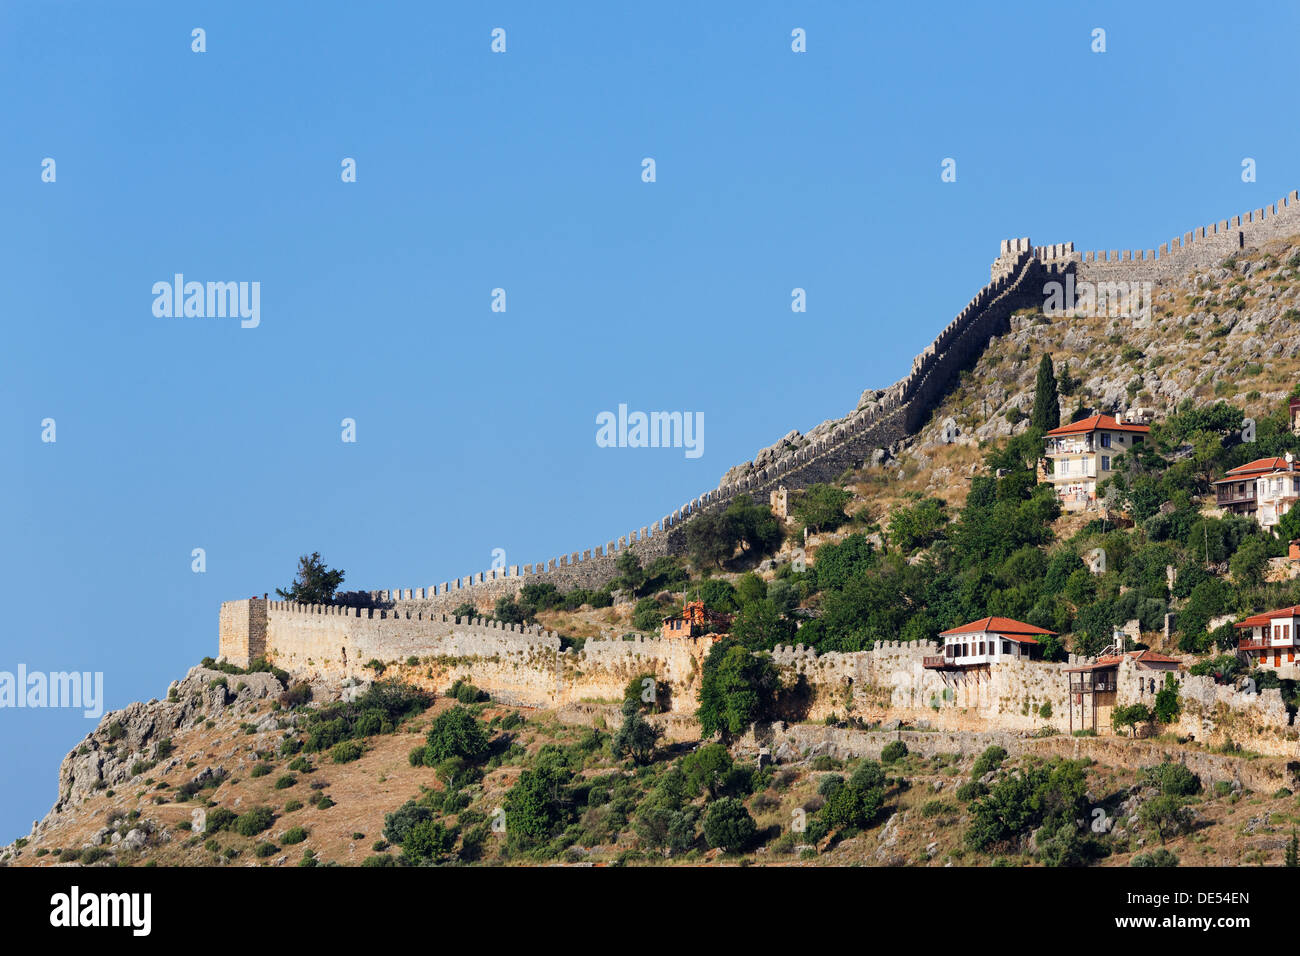 Mauern oder Wälle auf dem Hügel, Burg von Alanya, Tophane-Viertel, Tophane, Provinz Antalya, Alanya, türkische Riviera Stockfoto